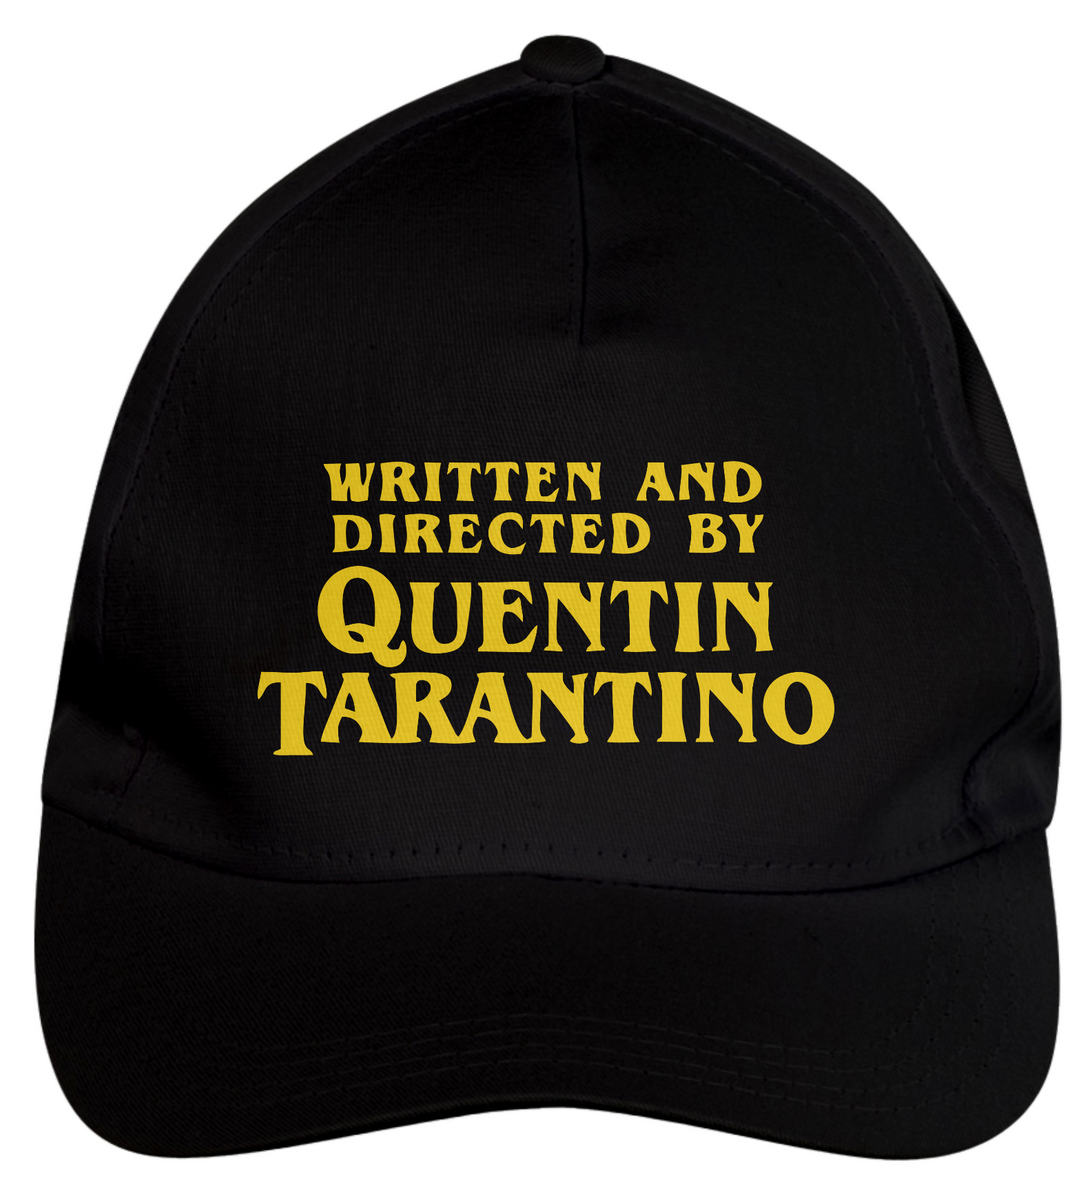 Nome do produto: Boné de brim Tarantino